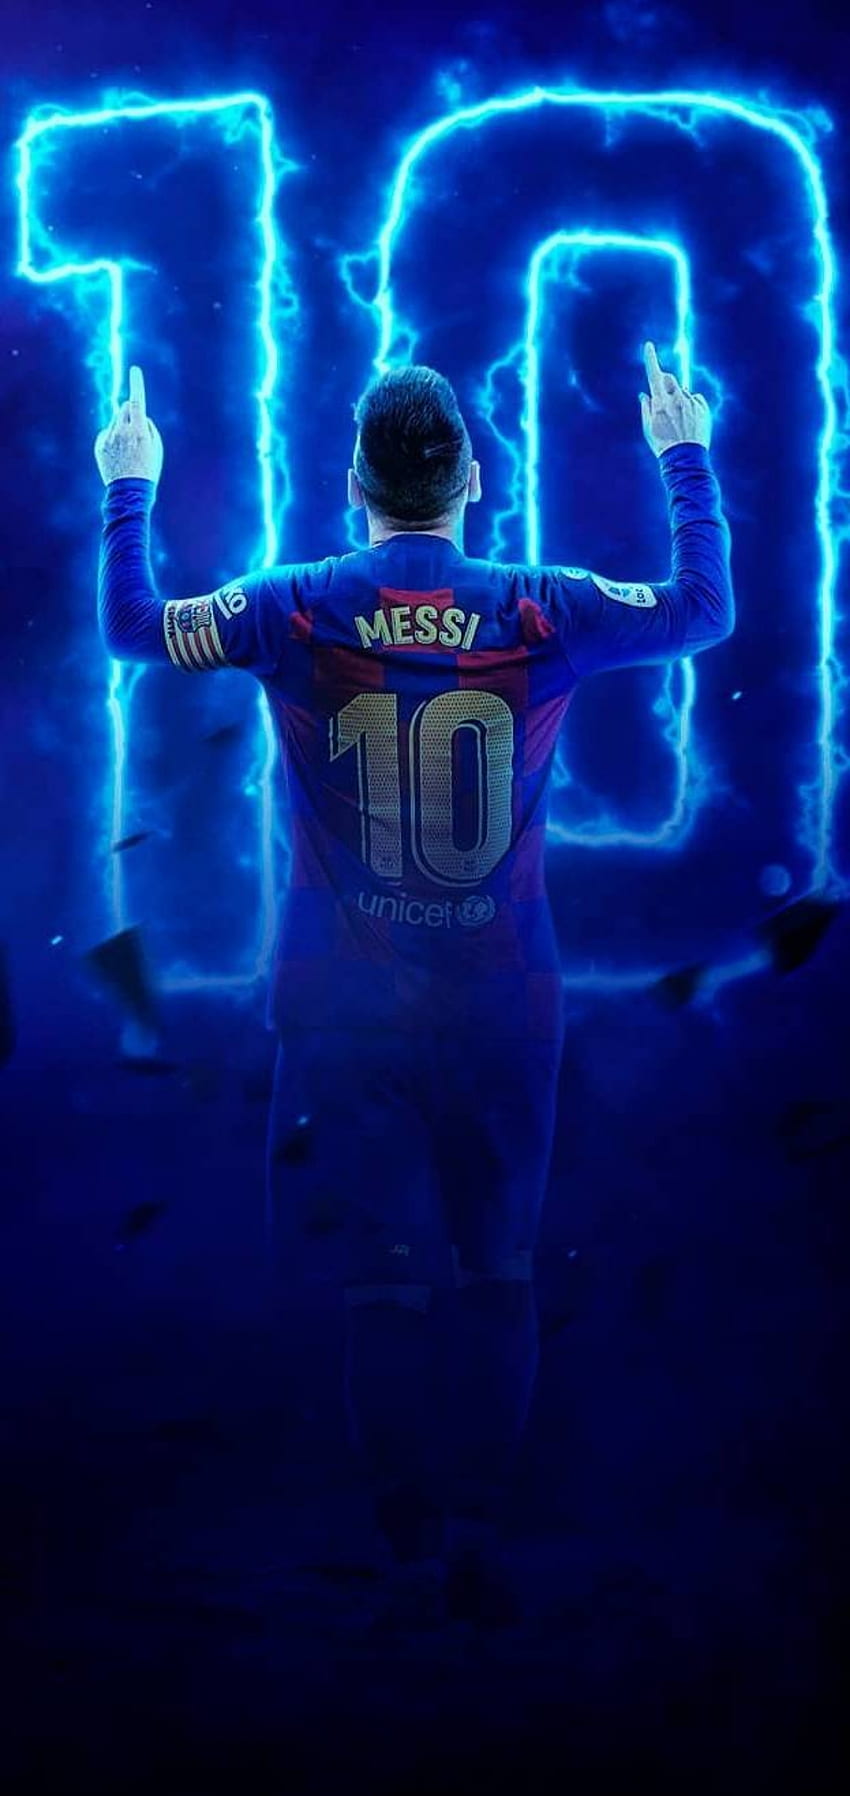 Nếu bạn là một người sử dụng iPhone, thì tại sao không trang trí màn hình với hình nền Lionel Messi tuyệt đẹp? Chúng tôi có nhiều lựa chọn phù hợp với kích thước độ phân giải của các phiên bản iPhone khác nhau, cho phép bạn tận hưởng sự tuyệt vời của Messi bất cứ lúc nào!